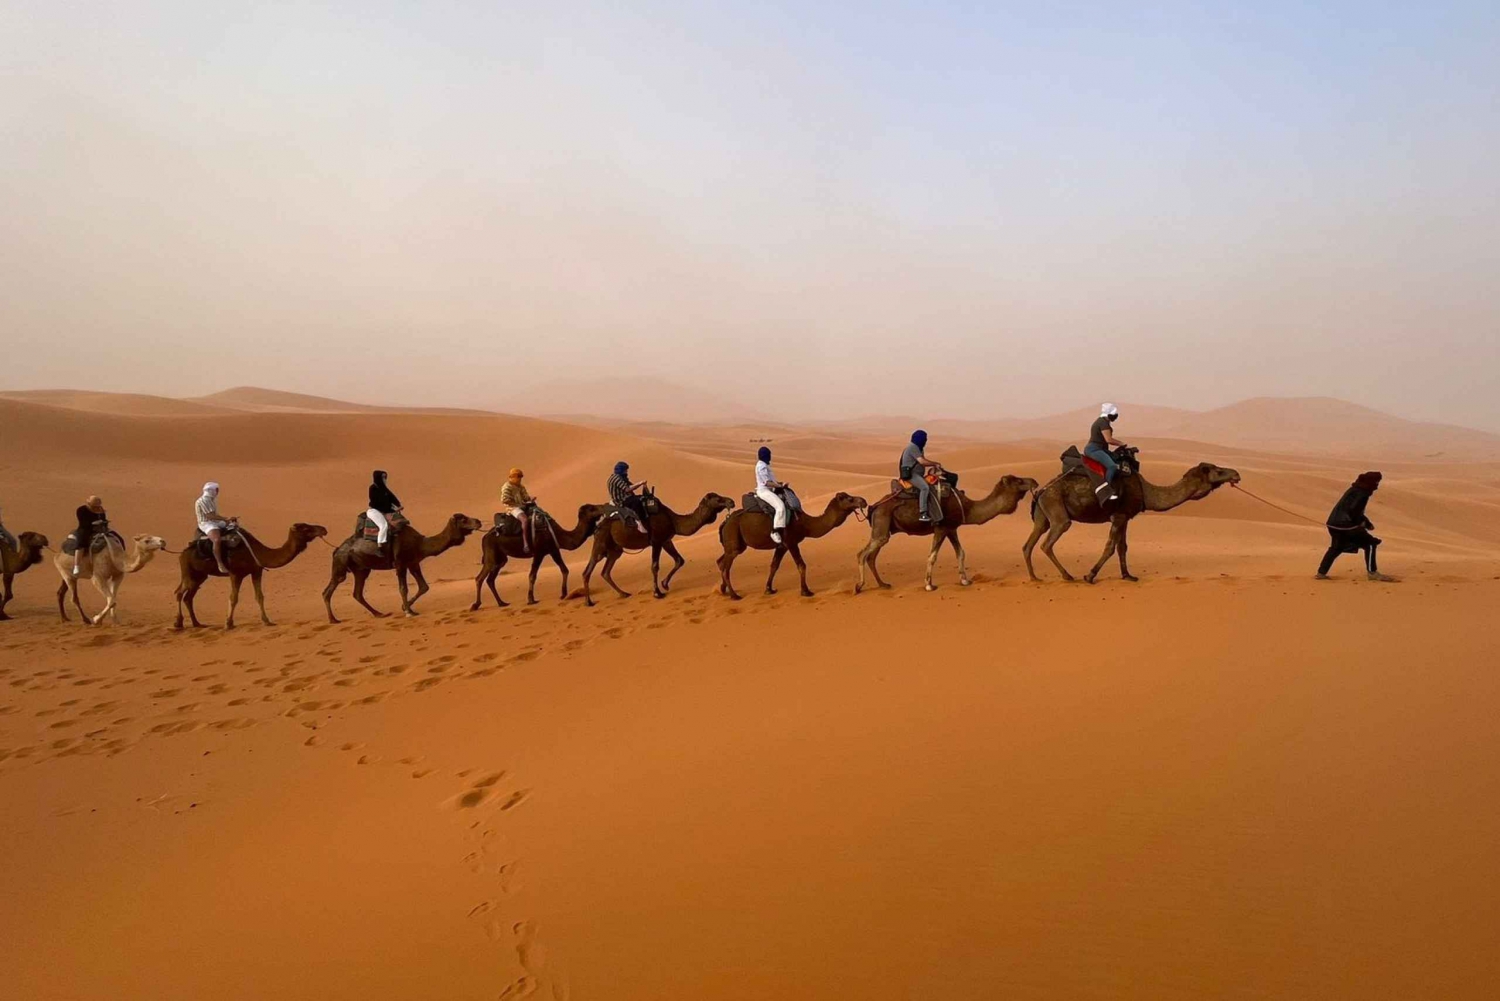 From Fez : 3-Days Desert Tour to Marrakech via Merzouga